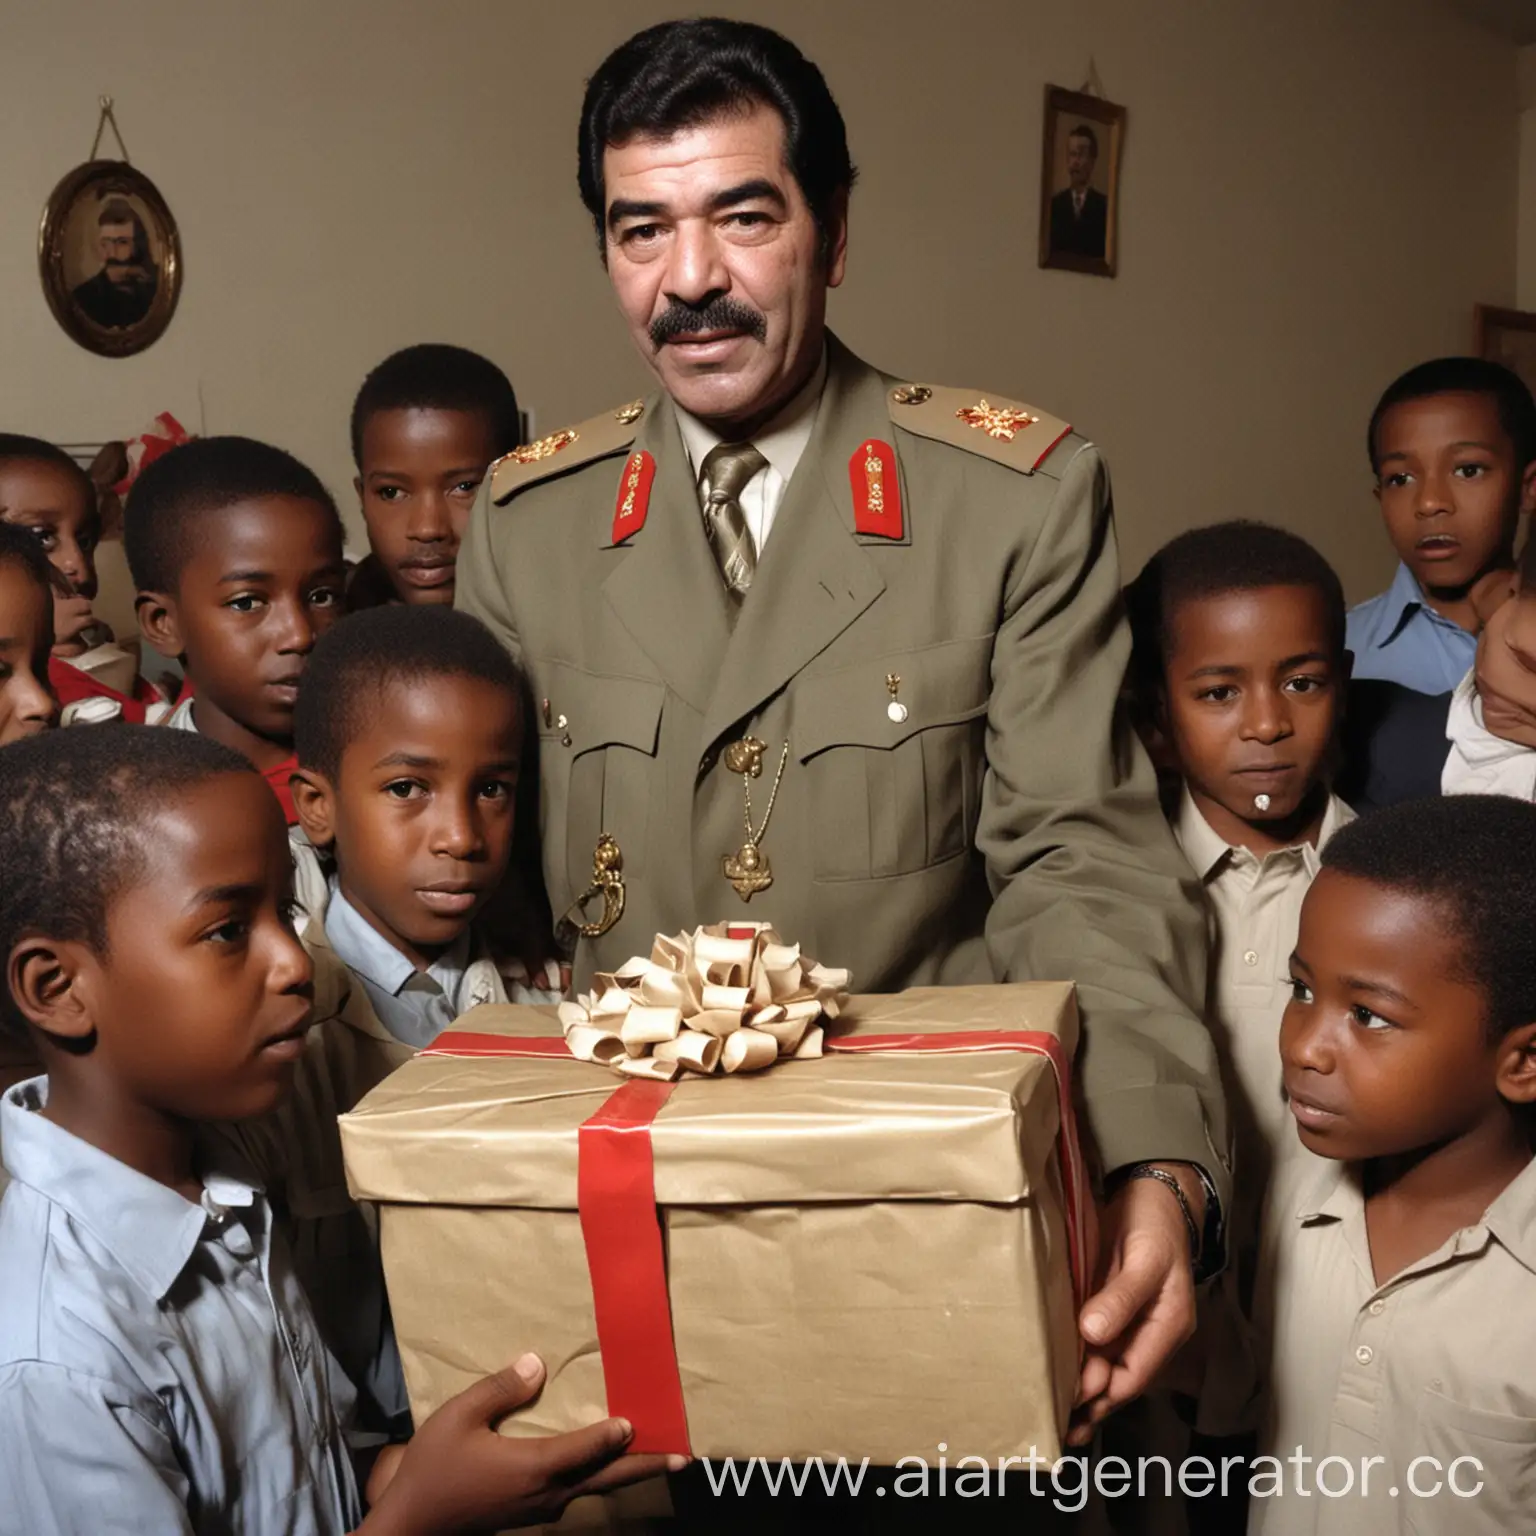 
Саддам Хусейн дарит Африканским детям подарки
